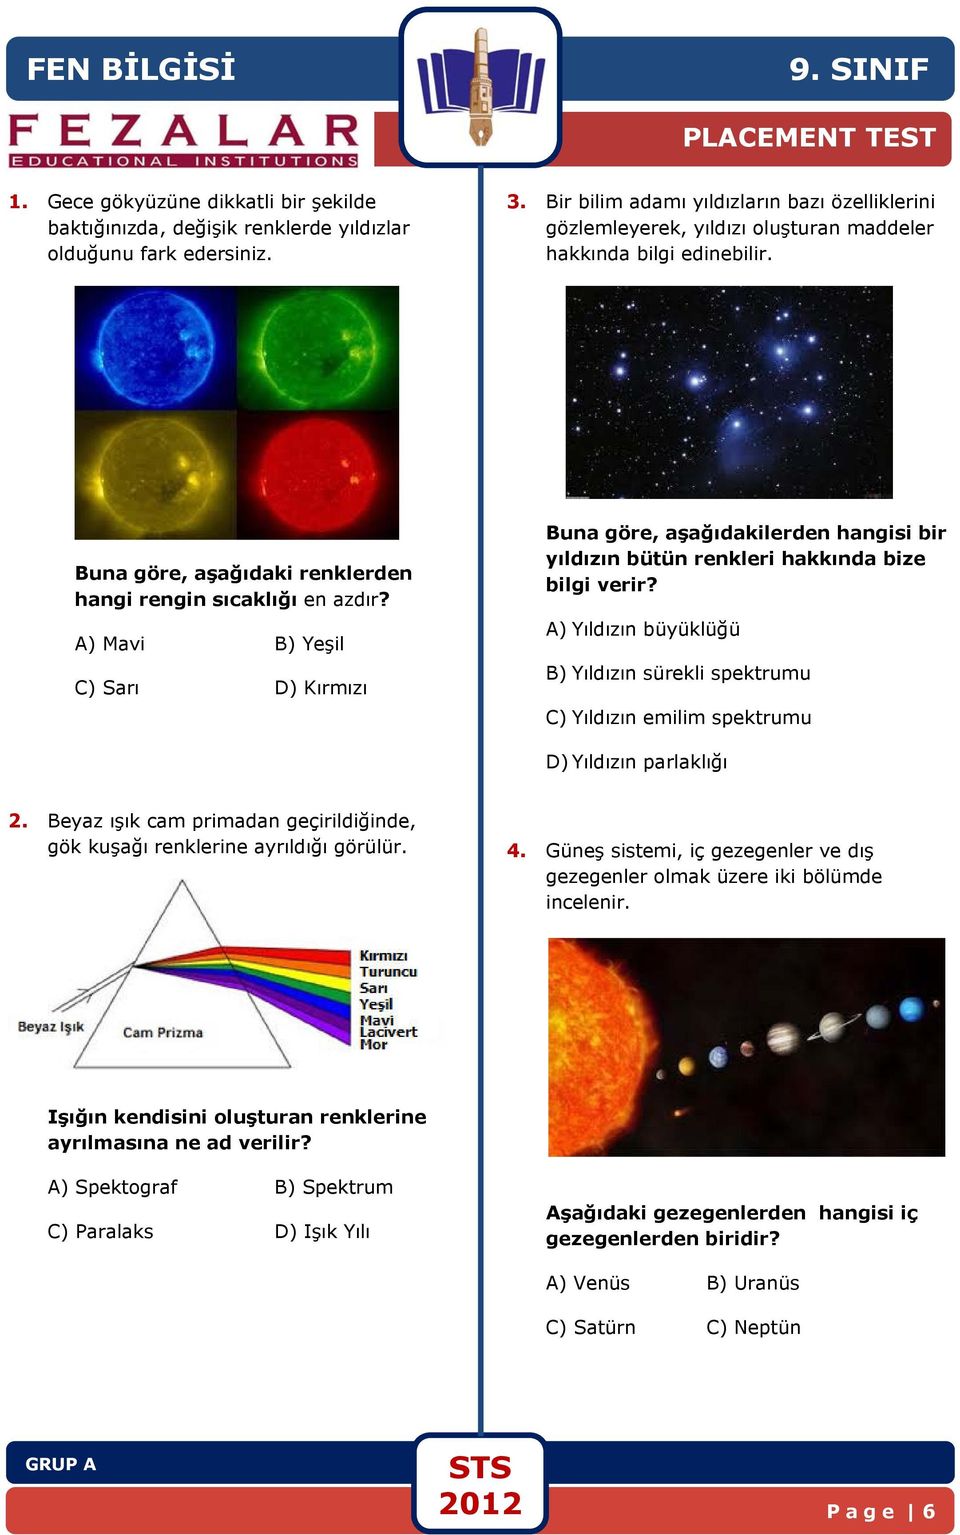 A) Mavi B) Yeşil C) Sarı D) Kırmızı Buna göre, aşağıdakilerden hangisi bir yıldızın bütün renkleri hakkında bize bilgi verir?